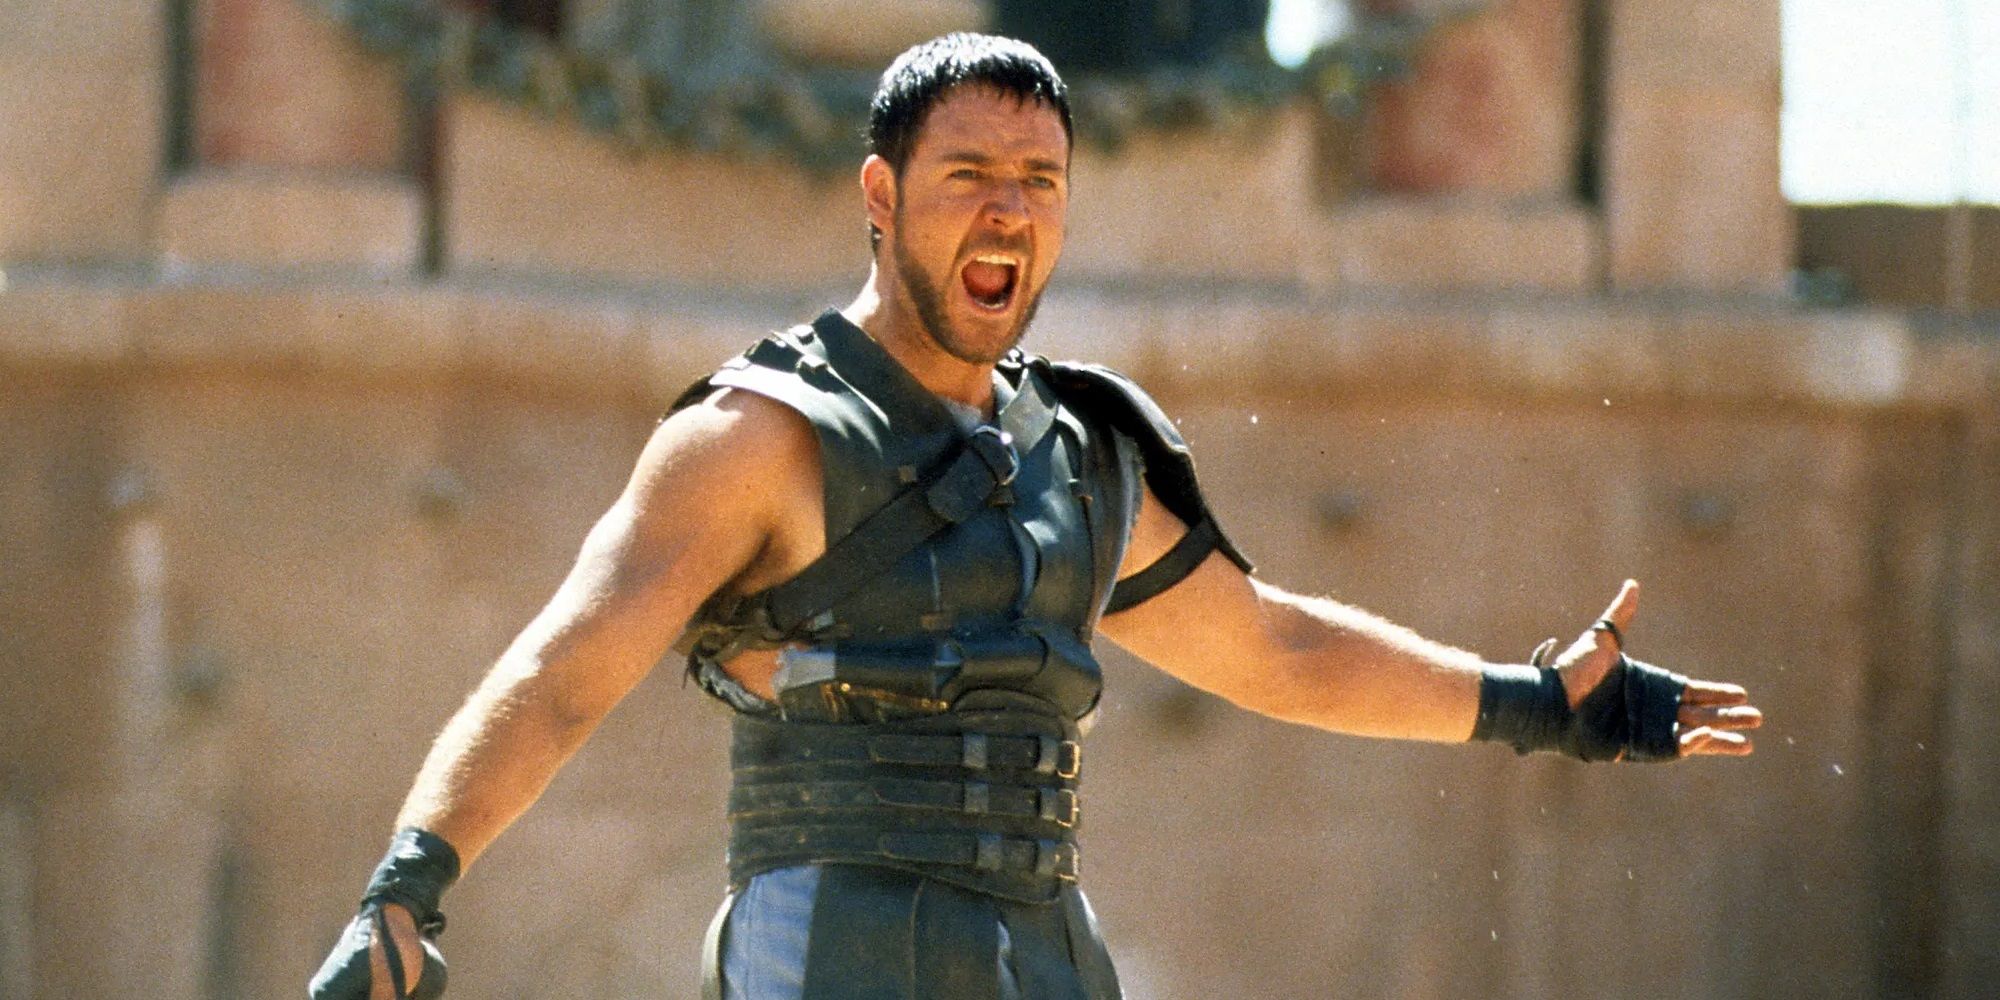 “New Maximus” de Gladiator 2 muestra por qué Russell Crowe no necesita regresar